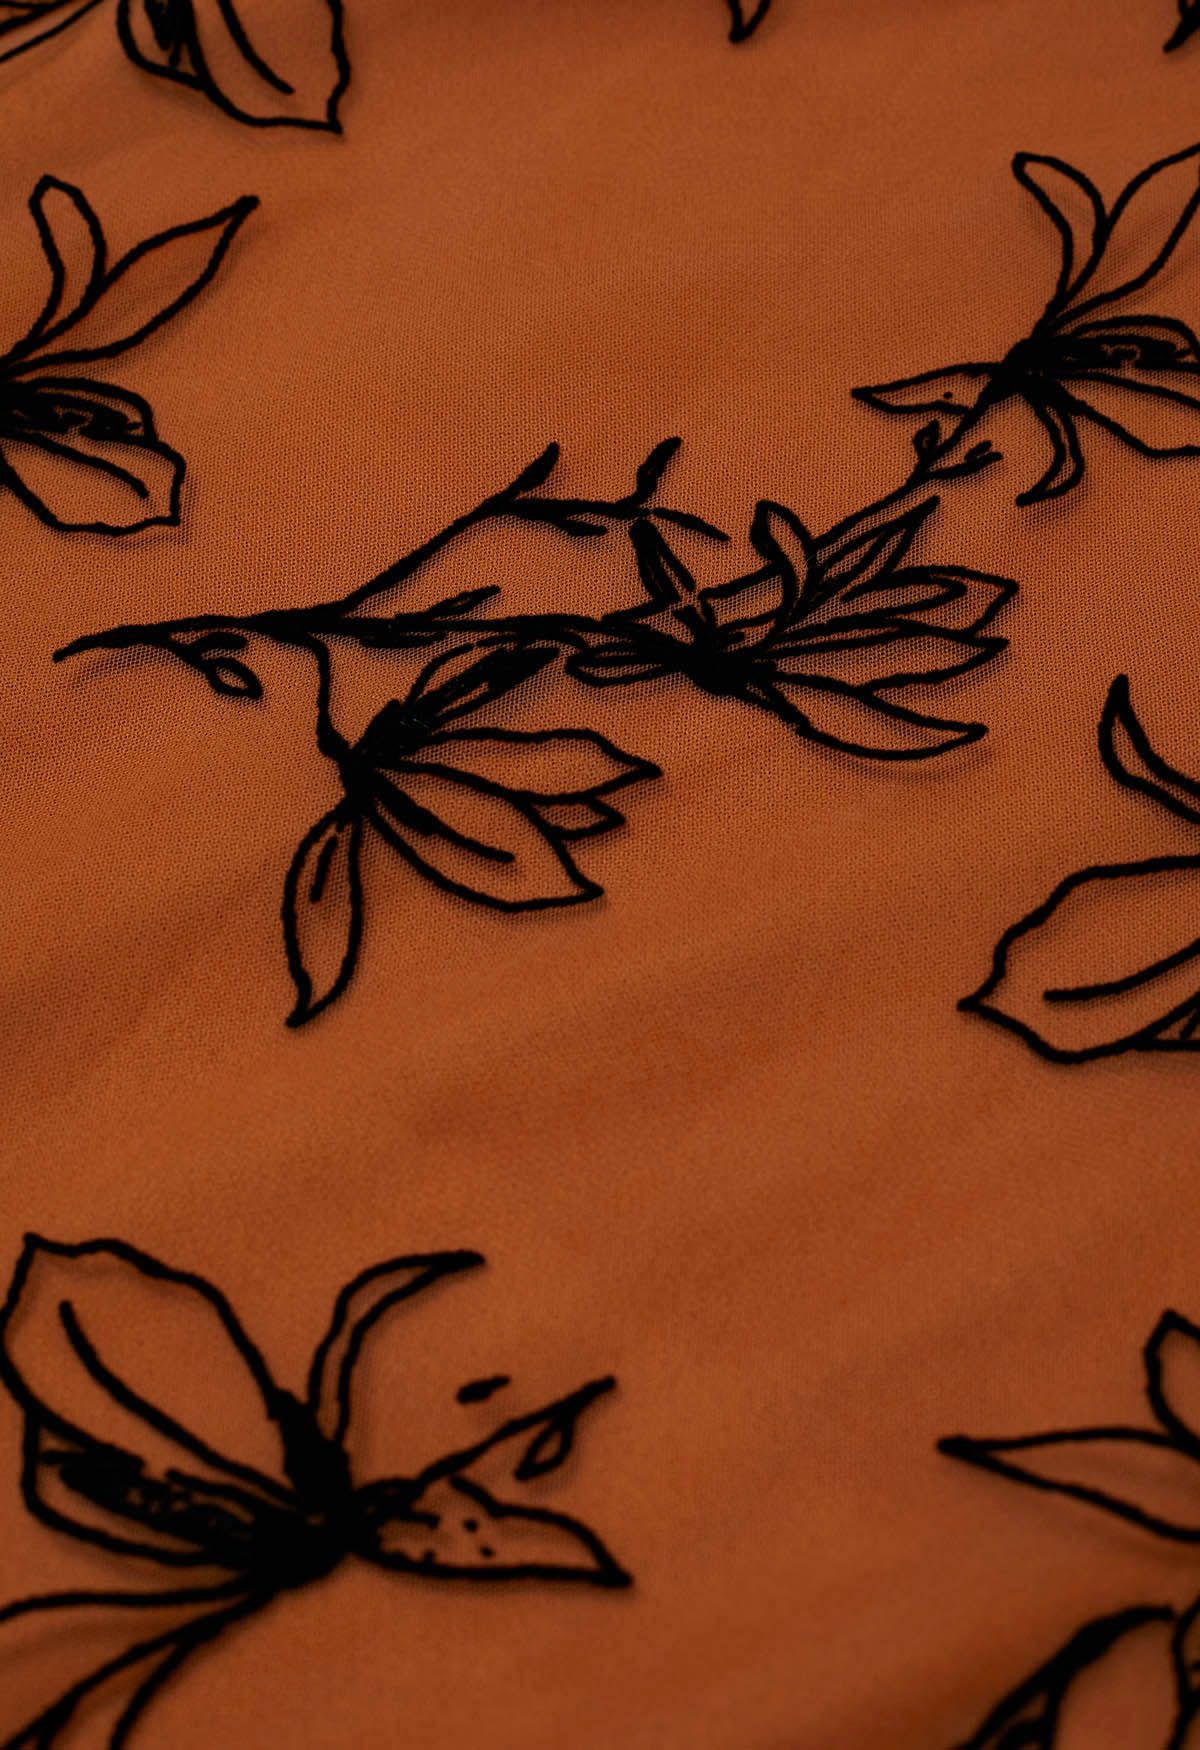 Velvet Magnolia Double-Layered Mesh Maxi Skirt in Orange